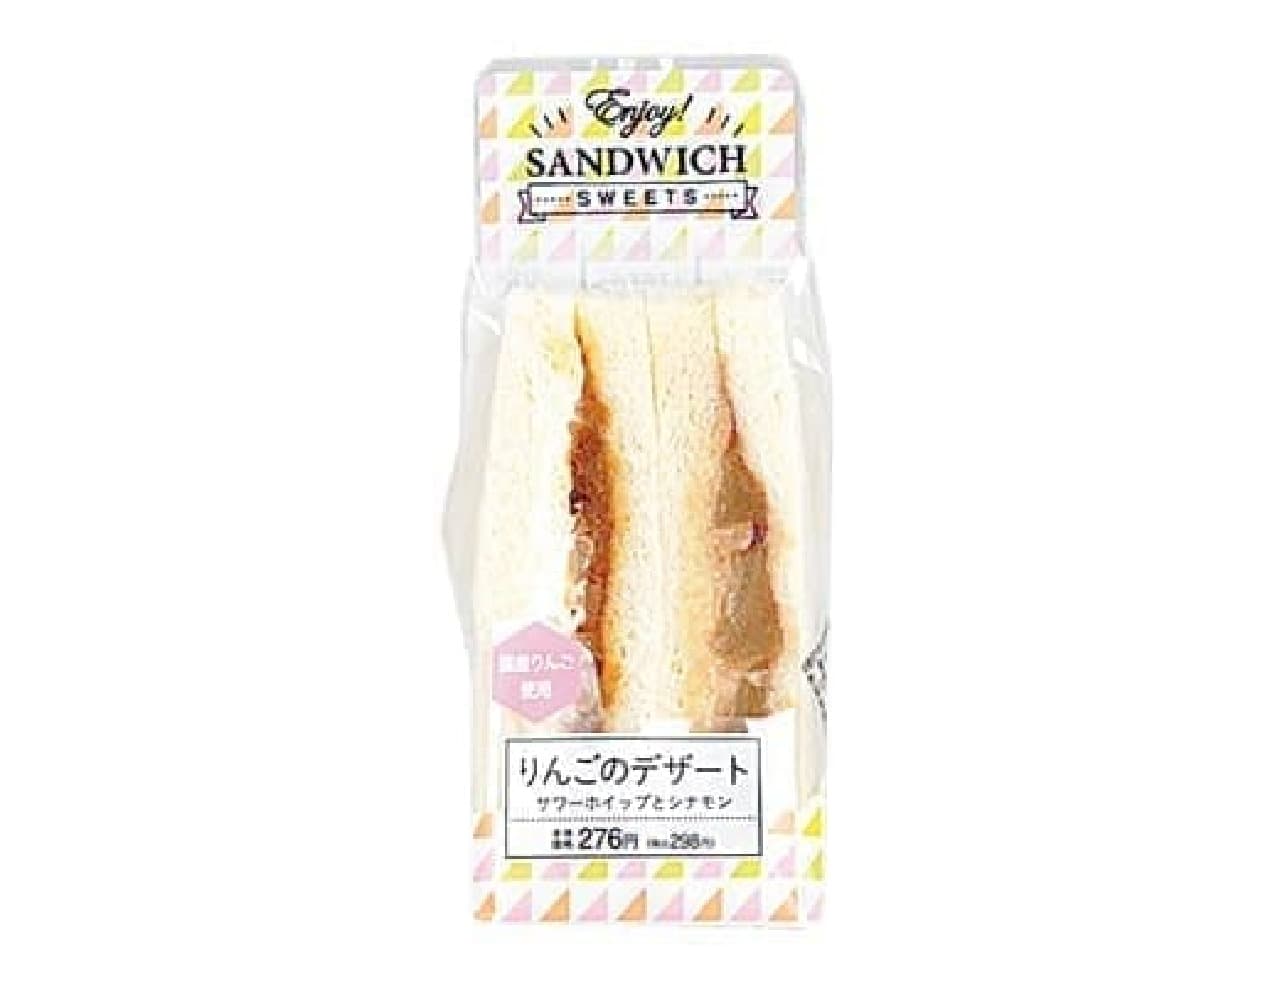 Lawson "Apple Dessert Sandwich"